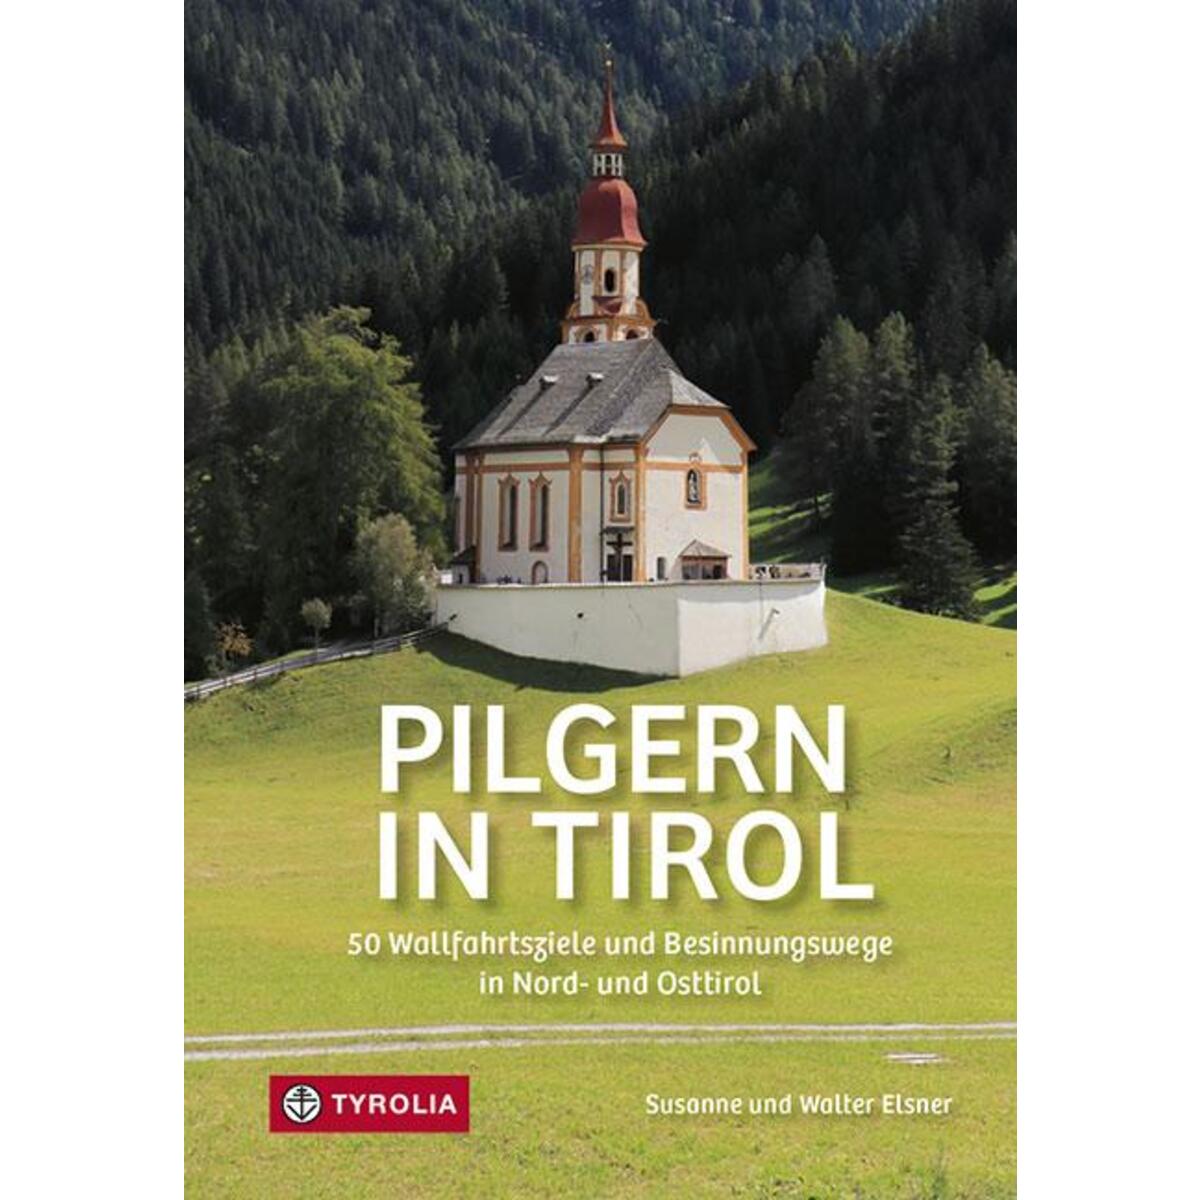 Pilgern in Tirol von Tyrolia Verlagsanstalt Gm